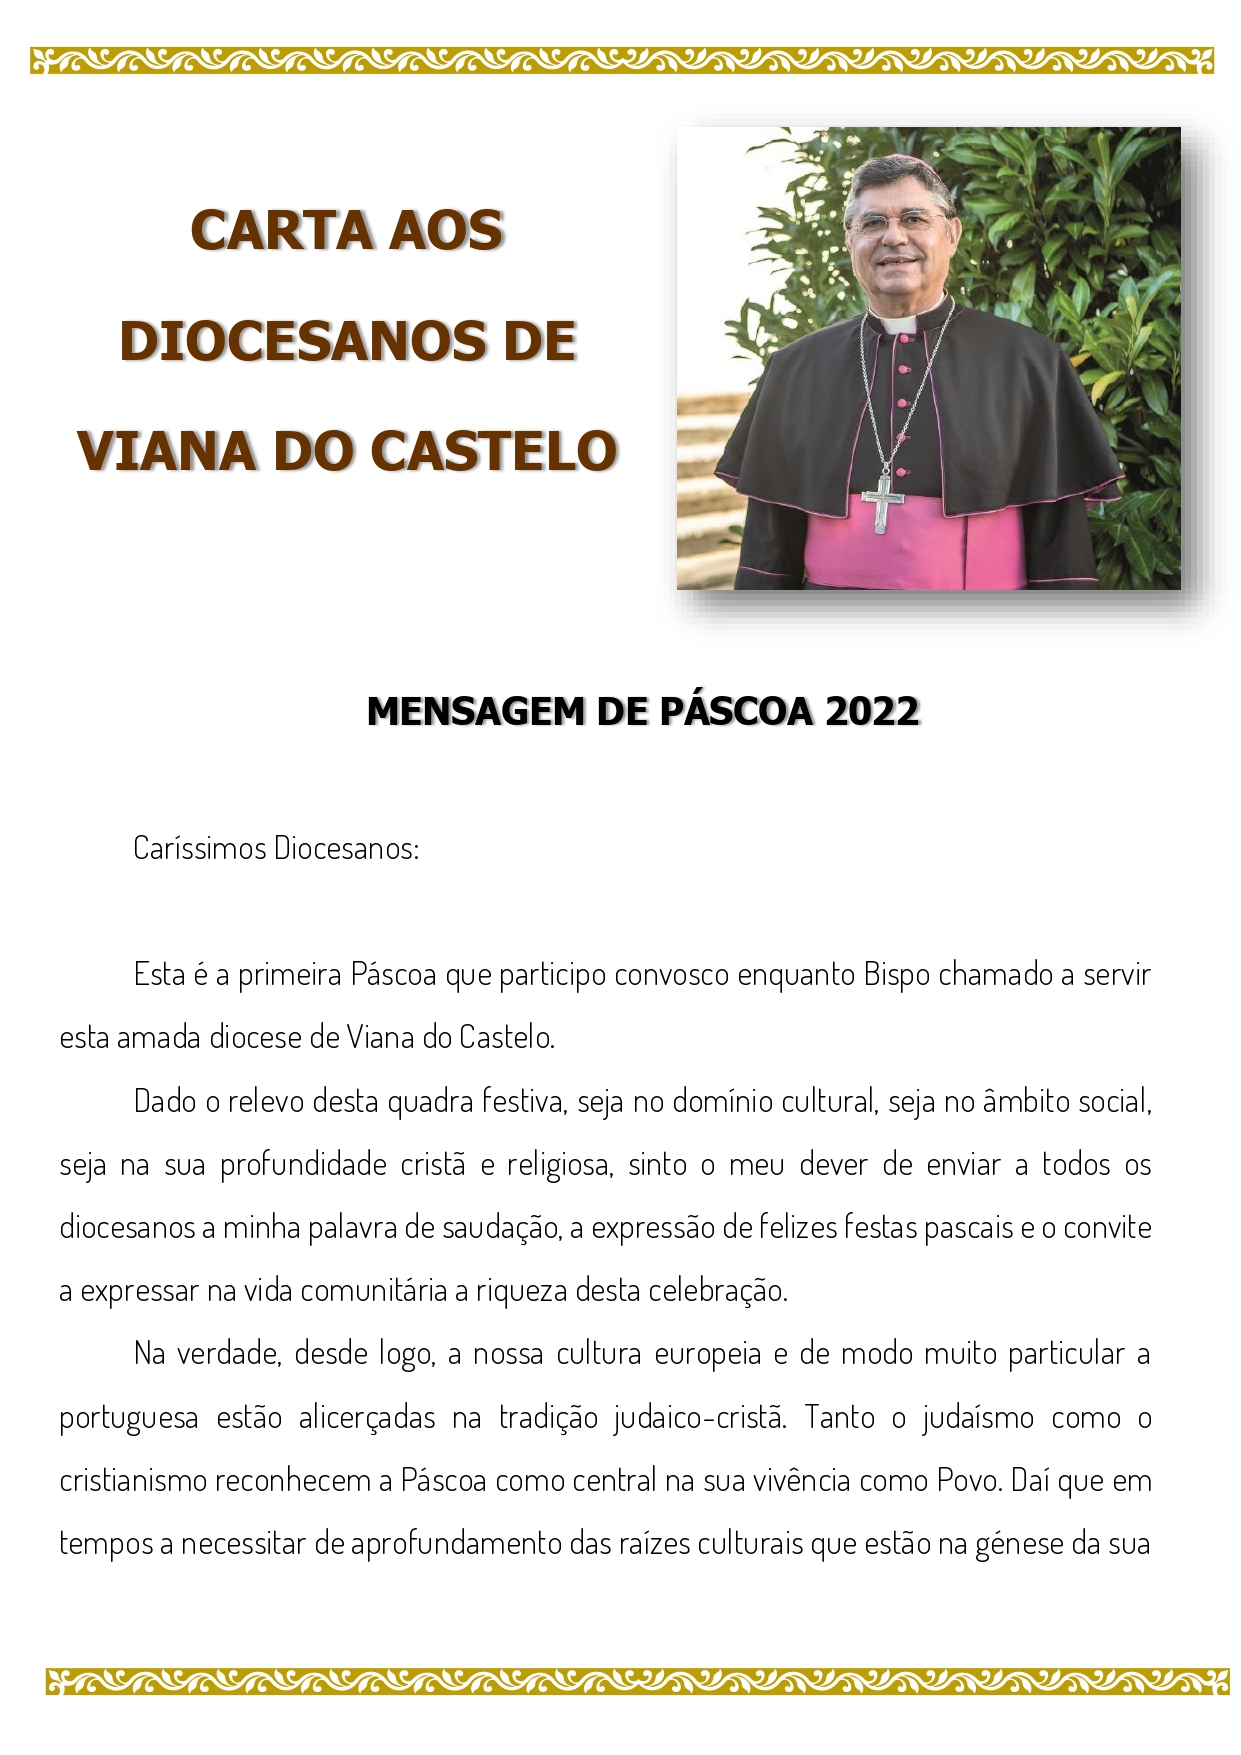 CARTA AOS DIOCESANOS DE VIANA DO CASTELO - MENSAGEM DE PÁSCOA 2022